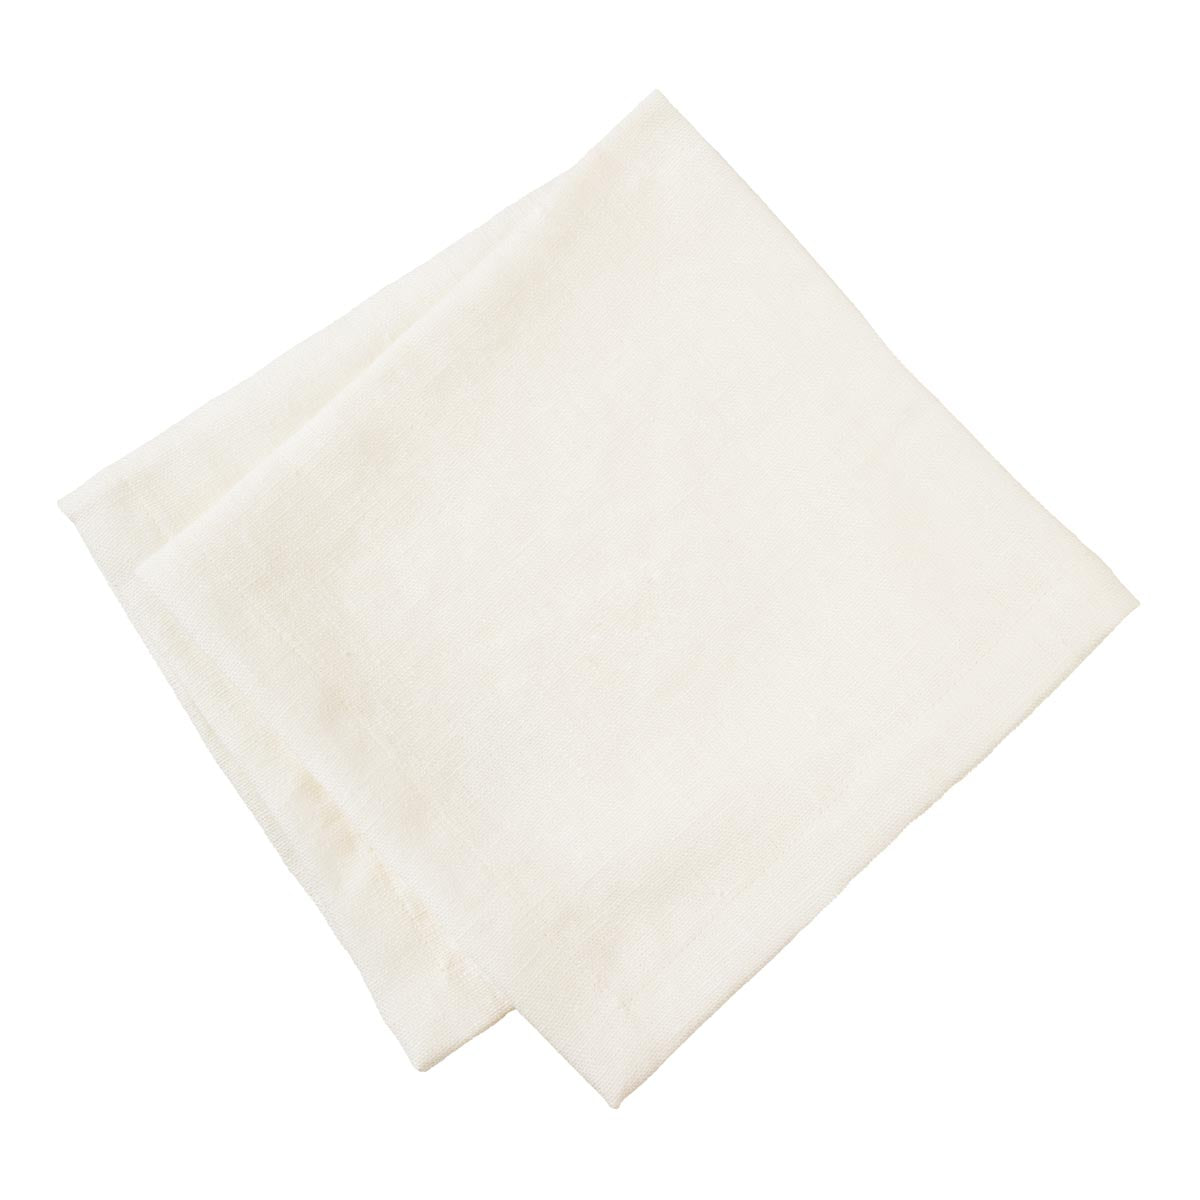 Vallaton linen napkin, 2 pcs, natural white